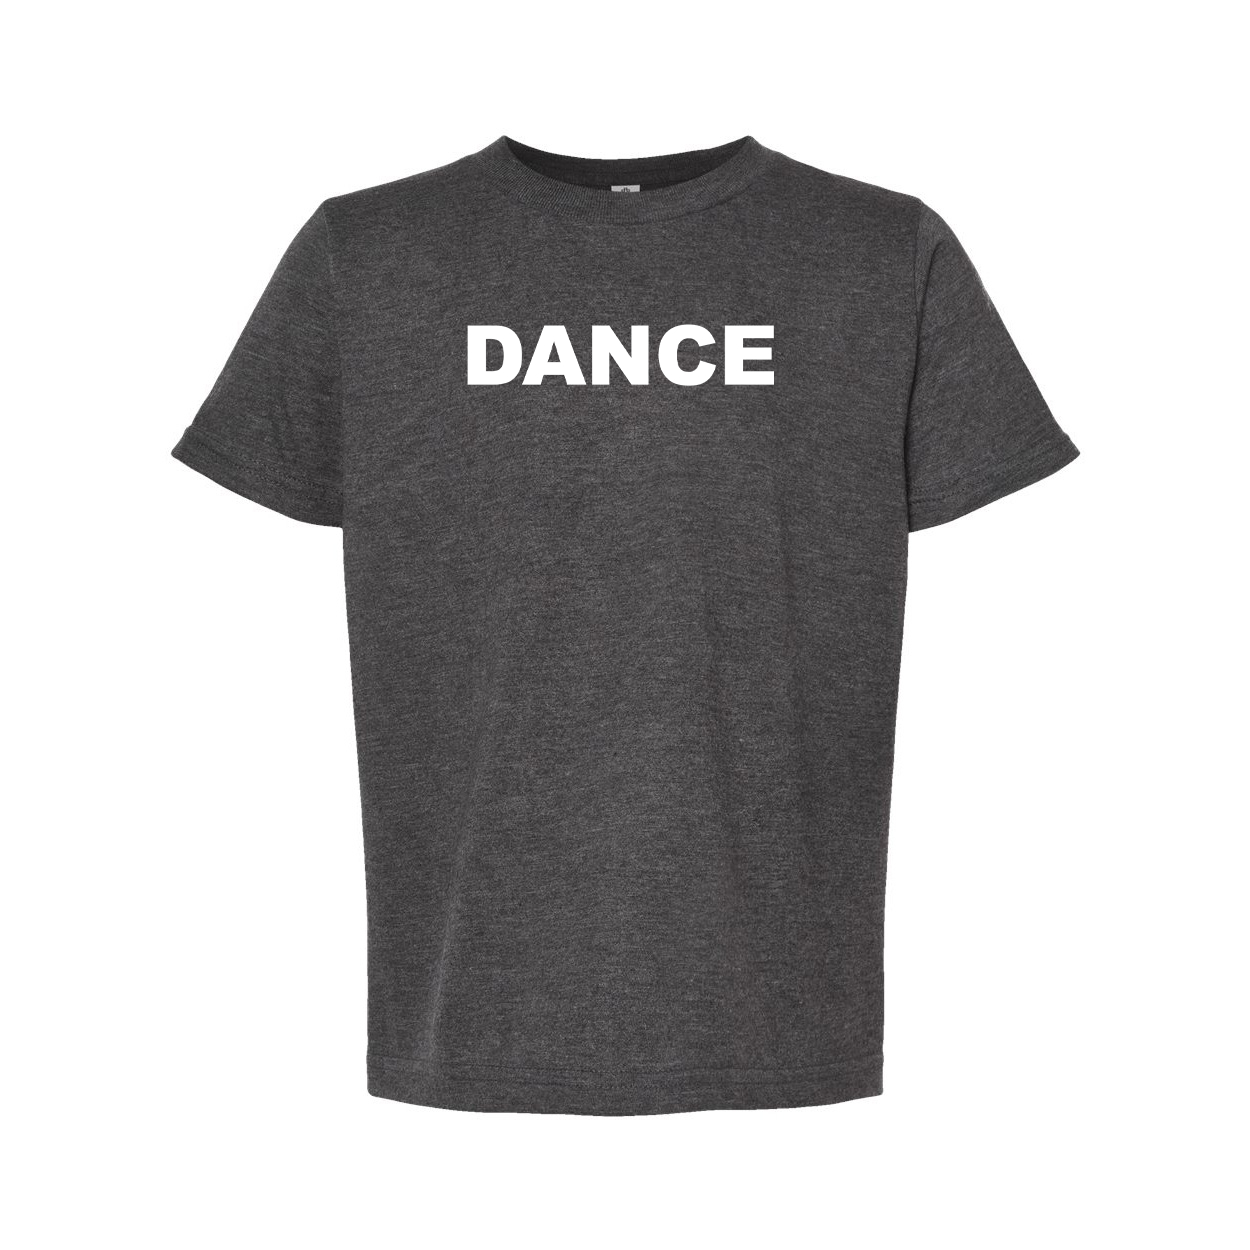 Dance Brand Logo Classic Youth T-Shirt Dark Heather Gray